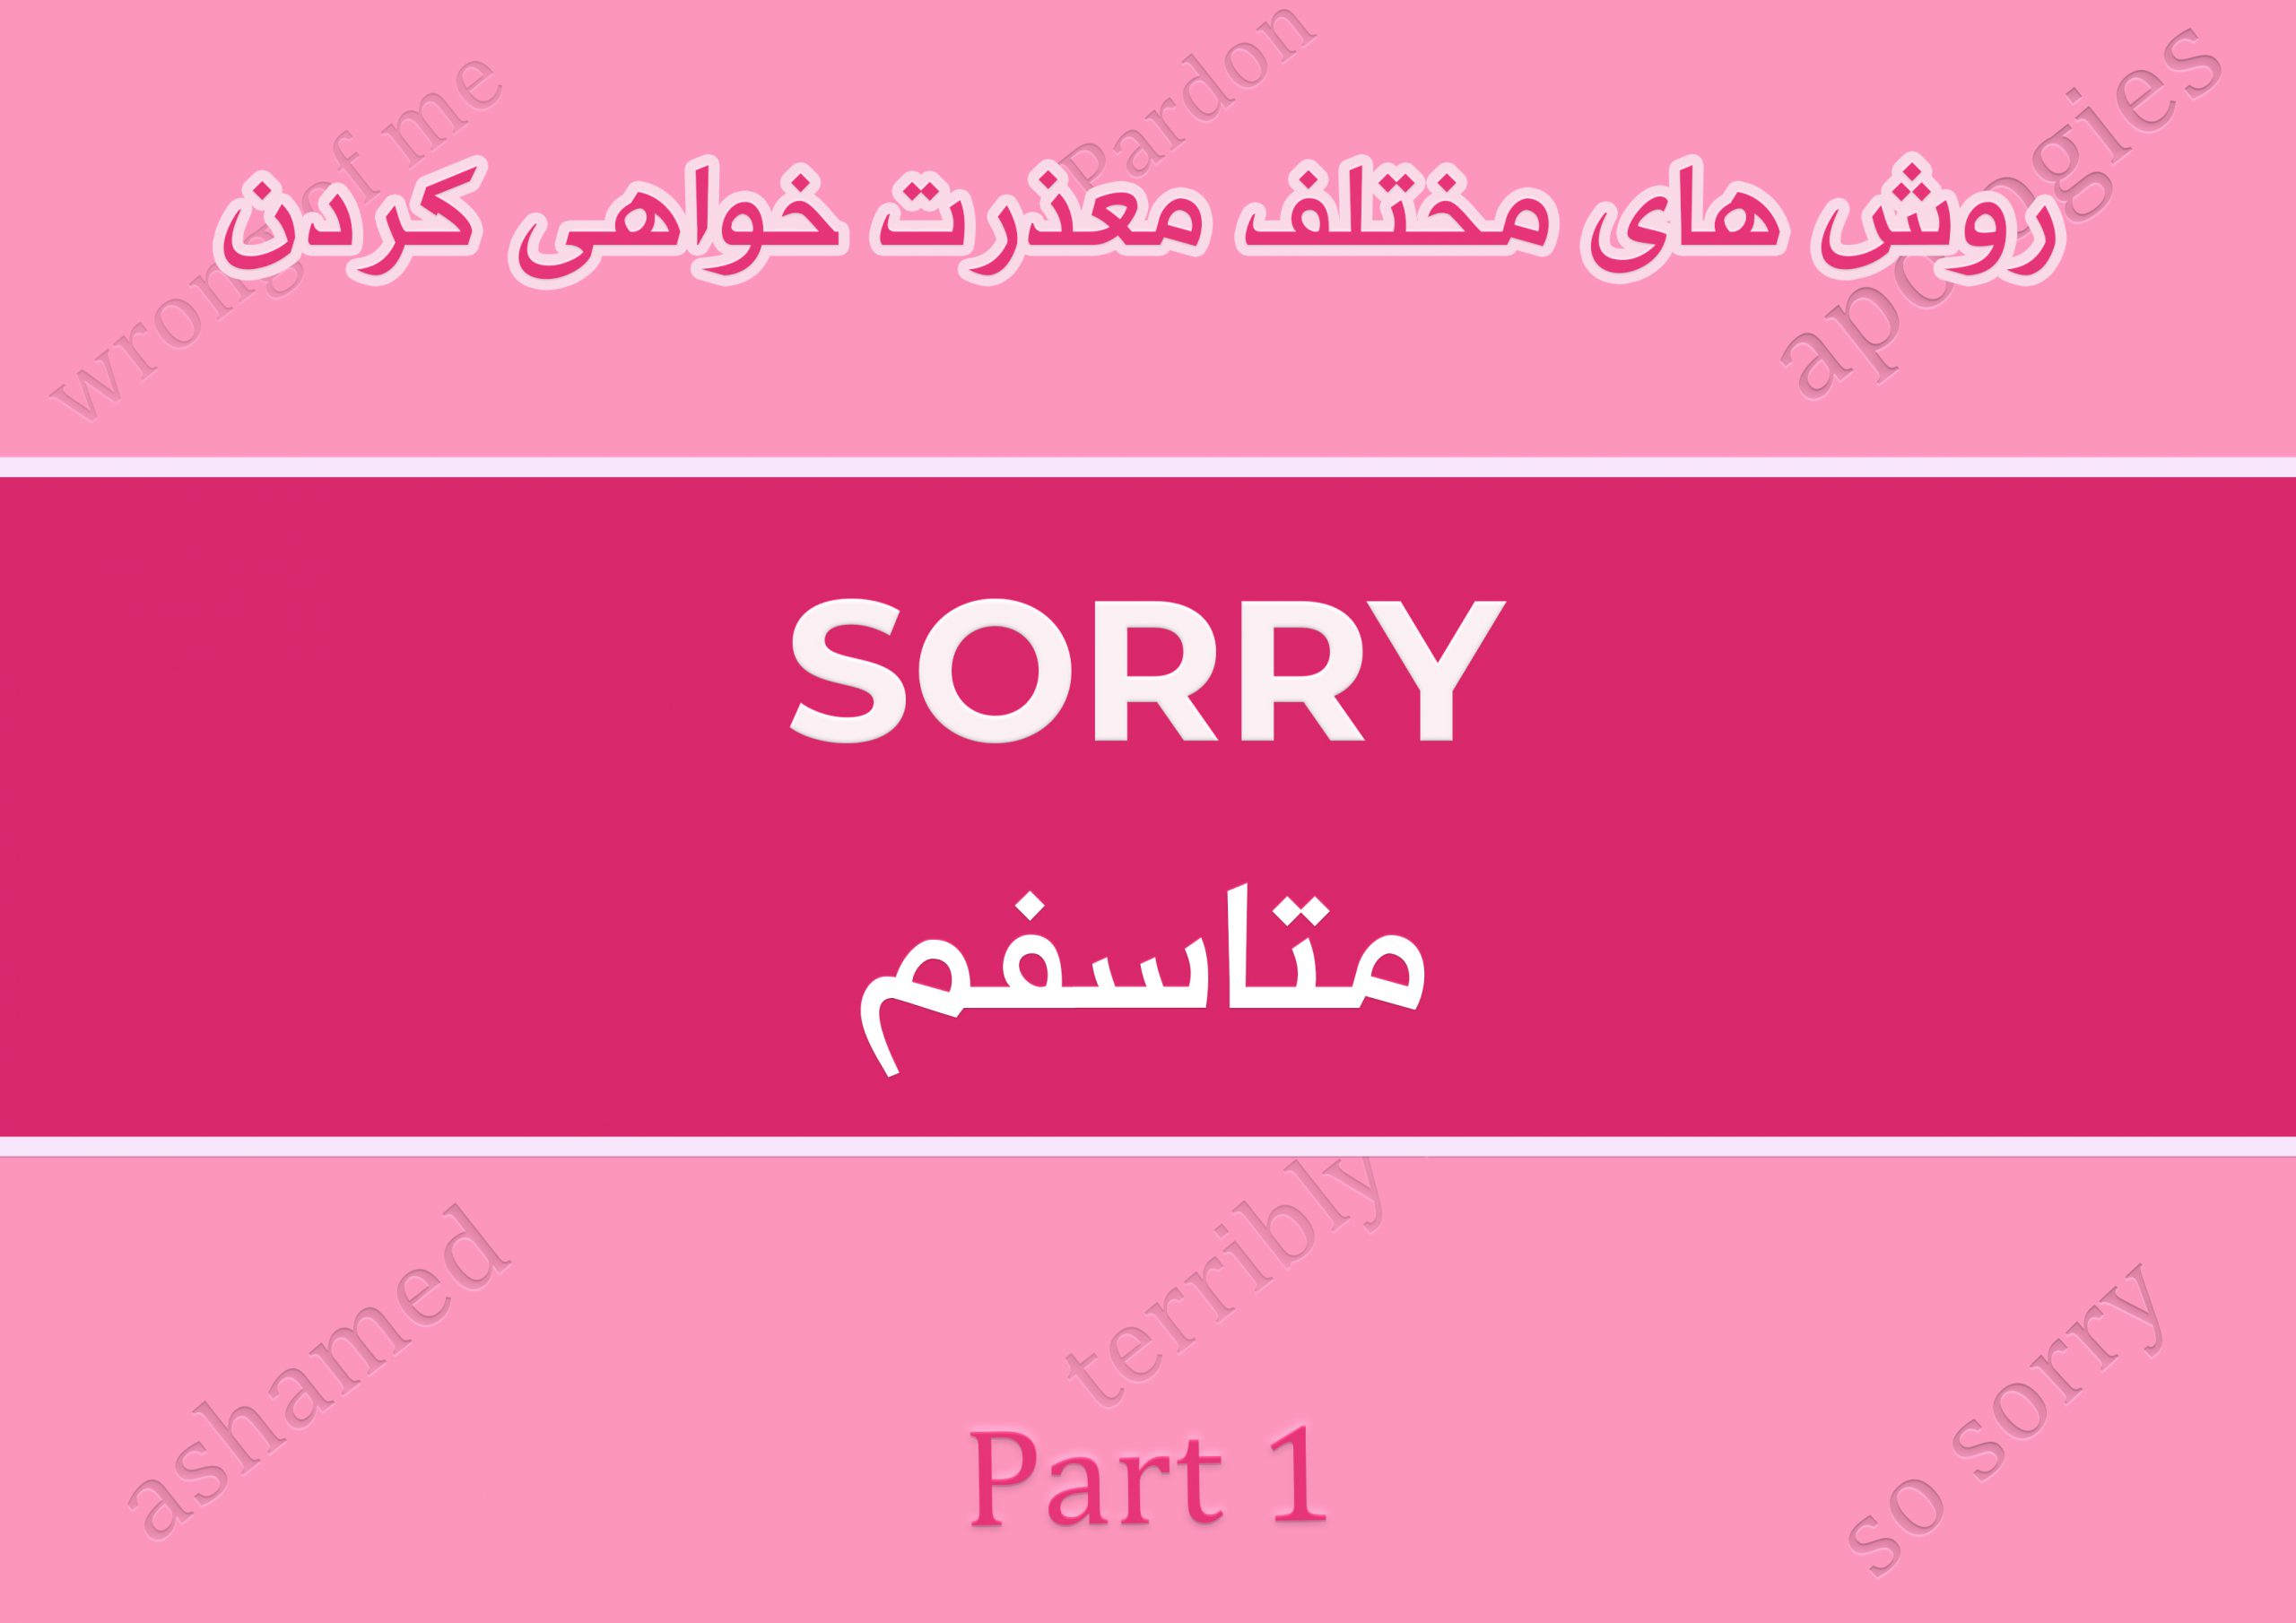 معذرت خواهی کردن به انگلیسی؟ ، به جای sorry دیگه از چه روش هایی برای عذرخواهی میتونیم استفاده کنیم؟ همش میگین sorry؟ عبارت های مختلف برای معذرت خواهی در شرایط گوناگون به انگلیسی